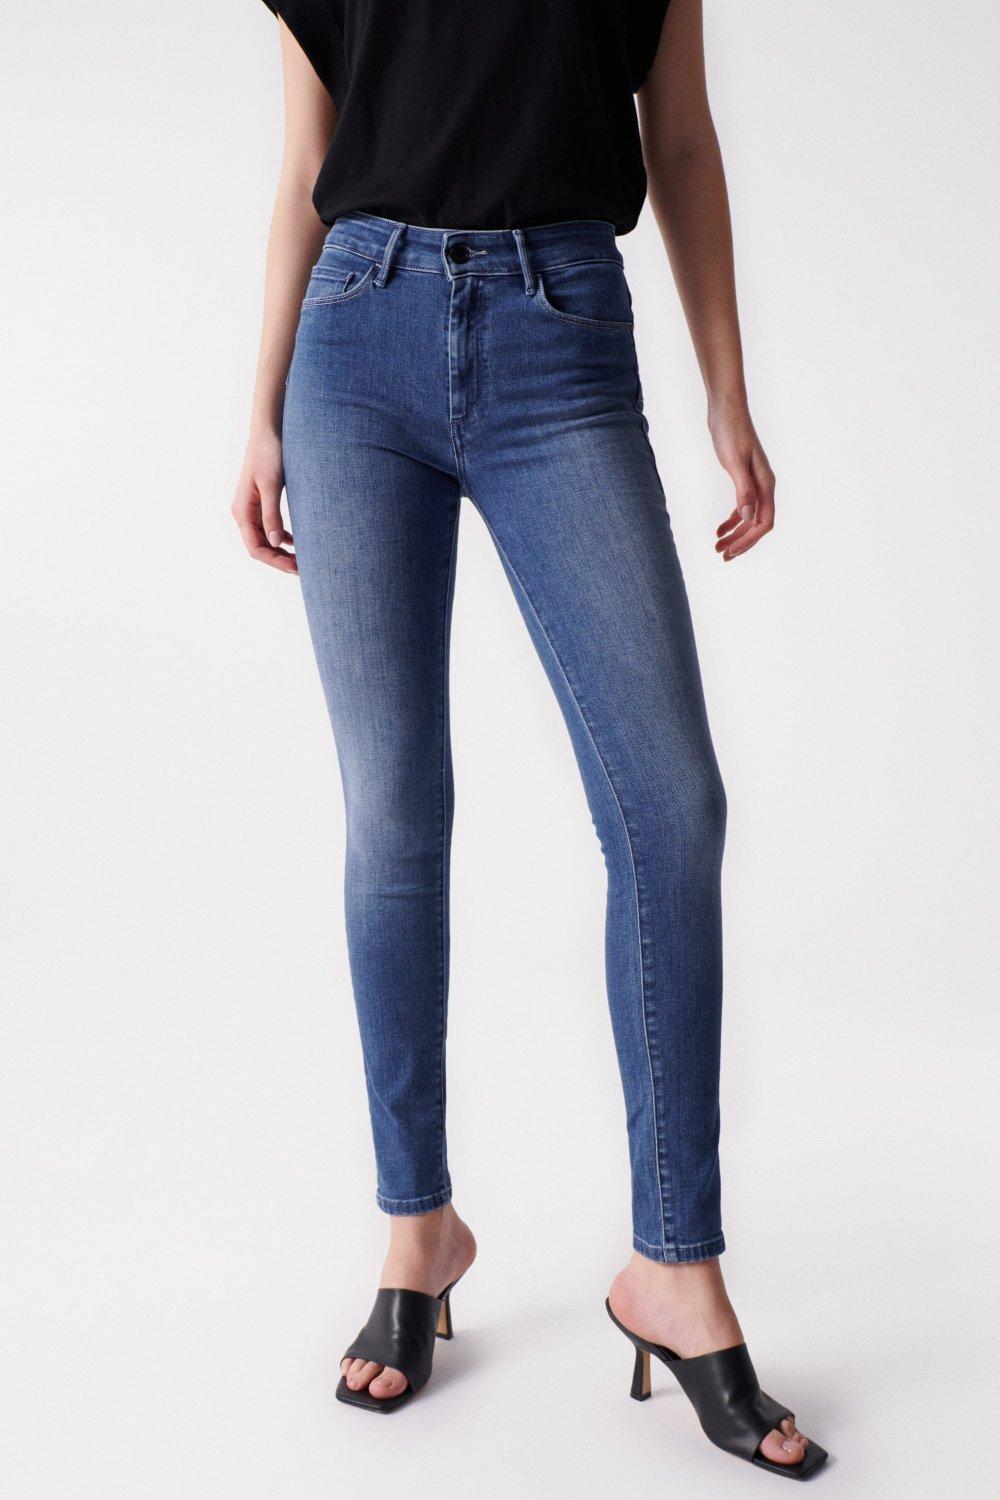 Jeans Destiny Skinny Damen Blau W33 von Salsa